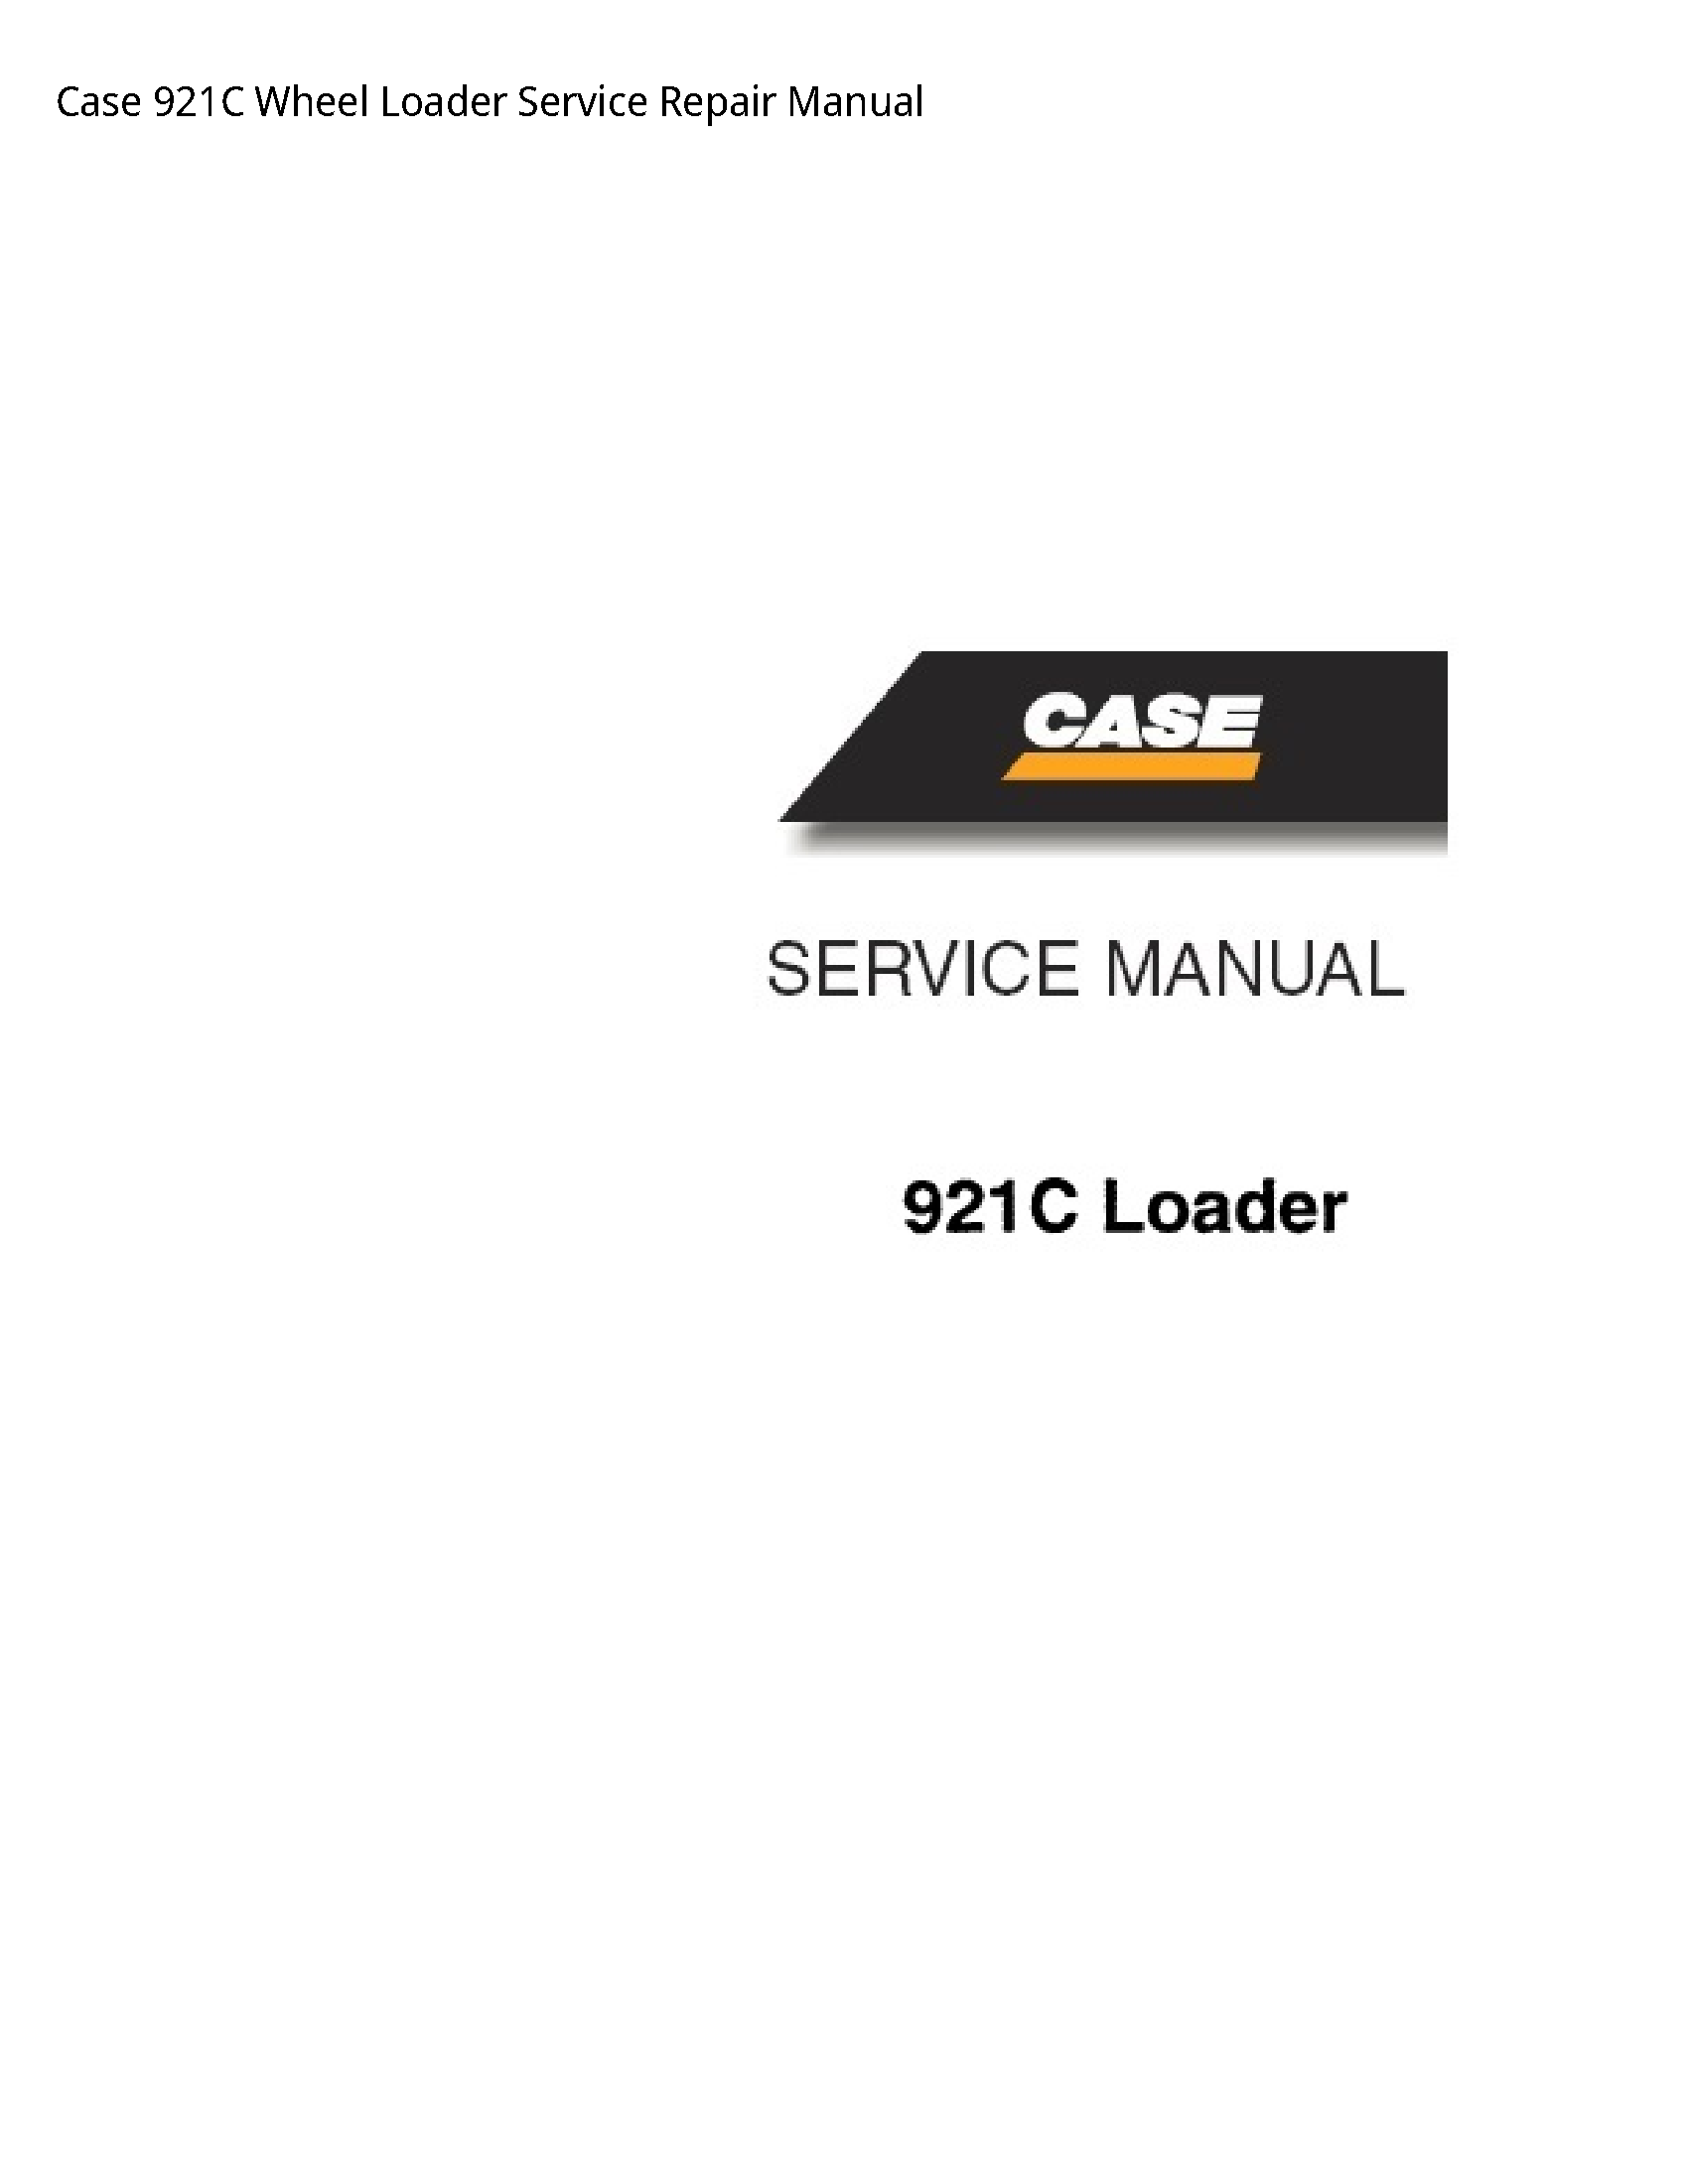 Case/Case IH 921C Wheel Loader manual